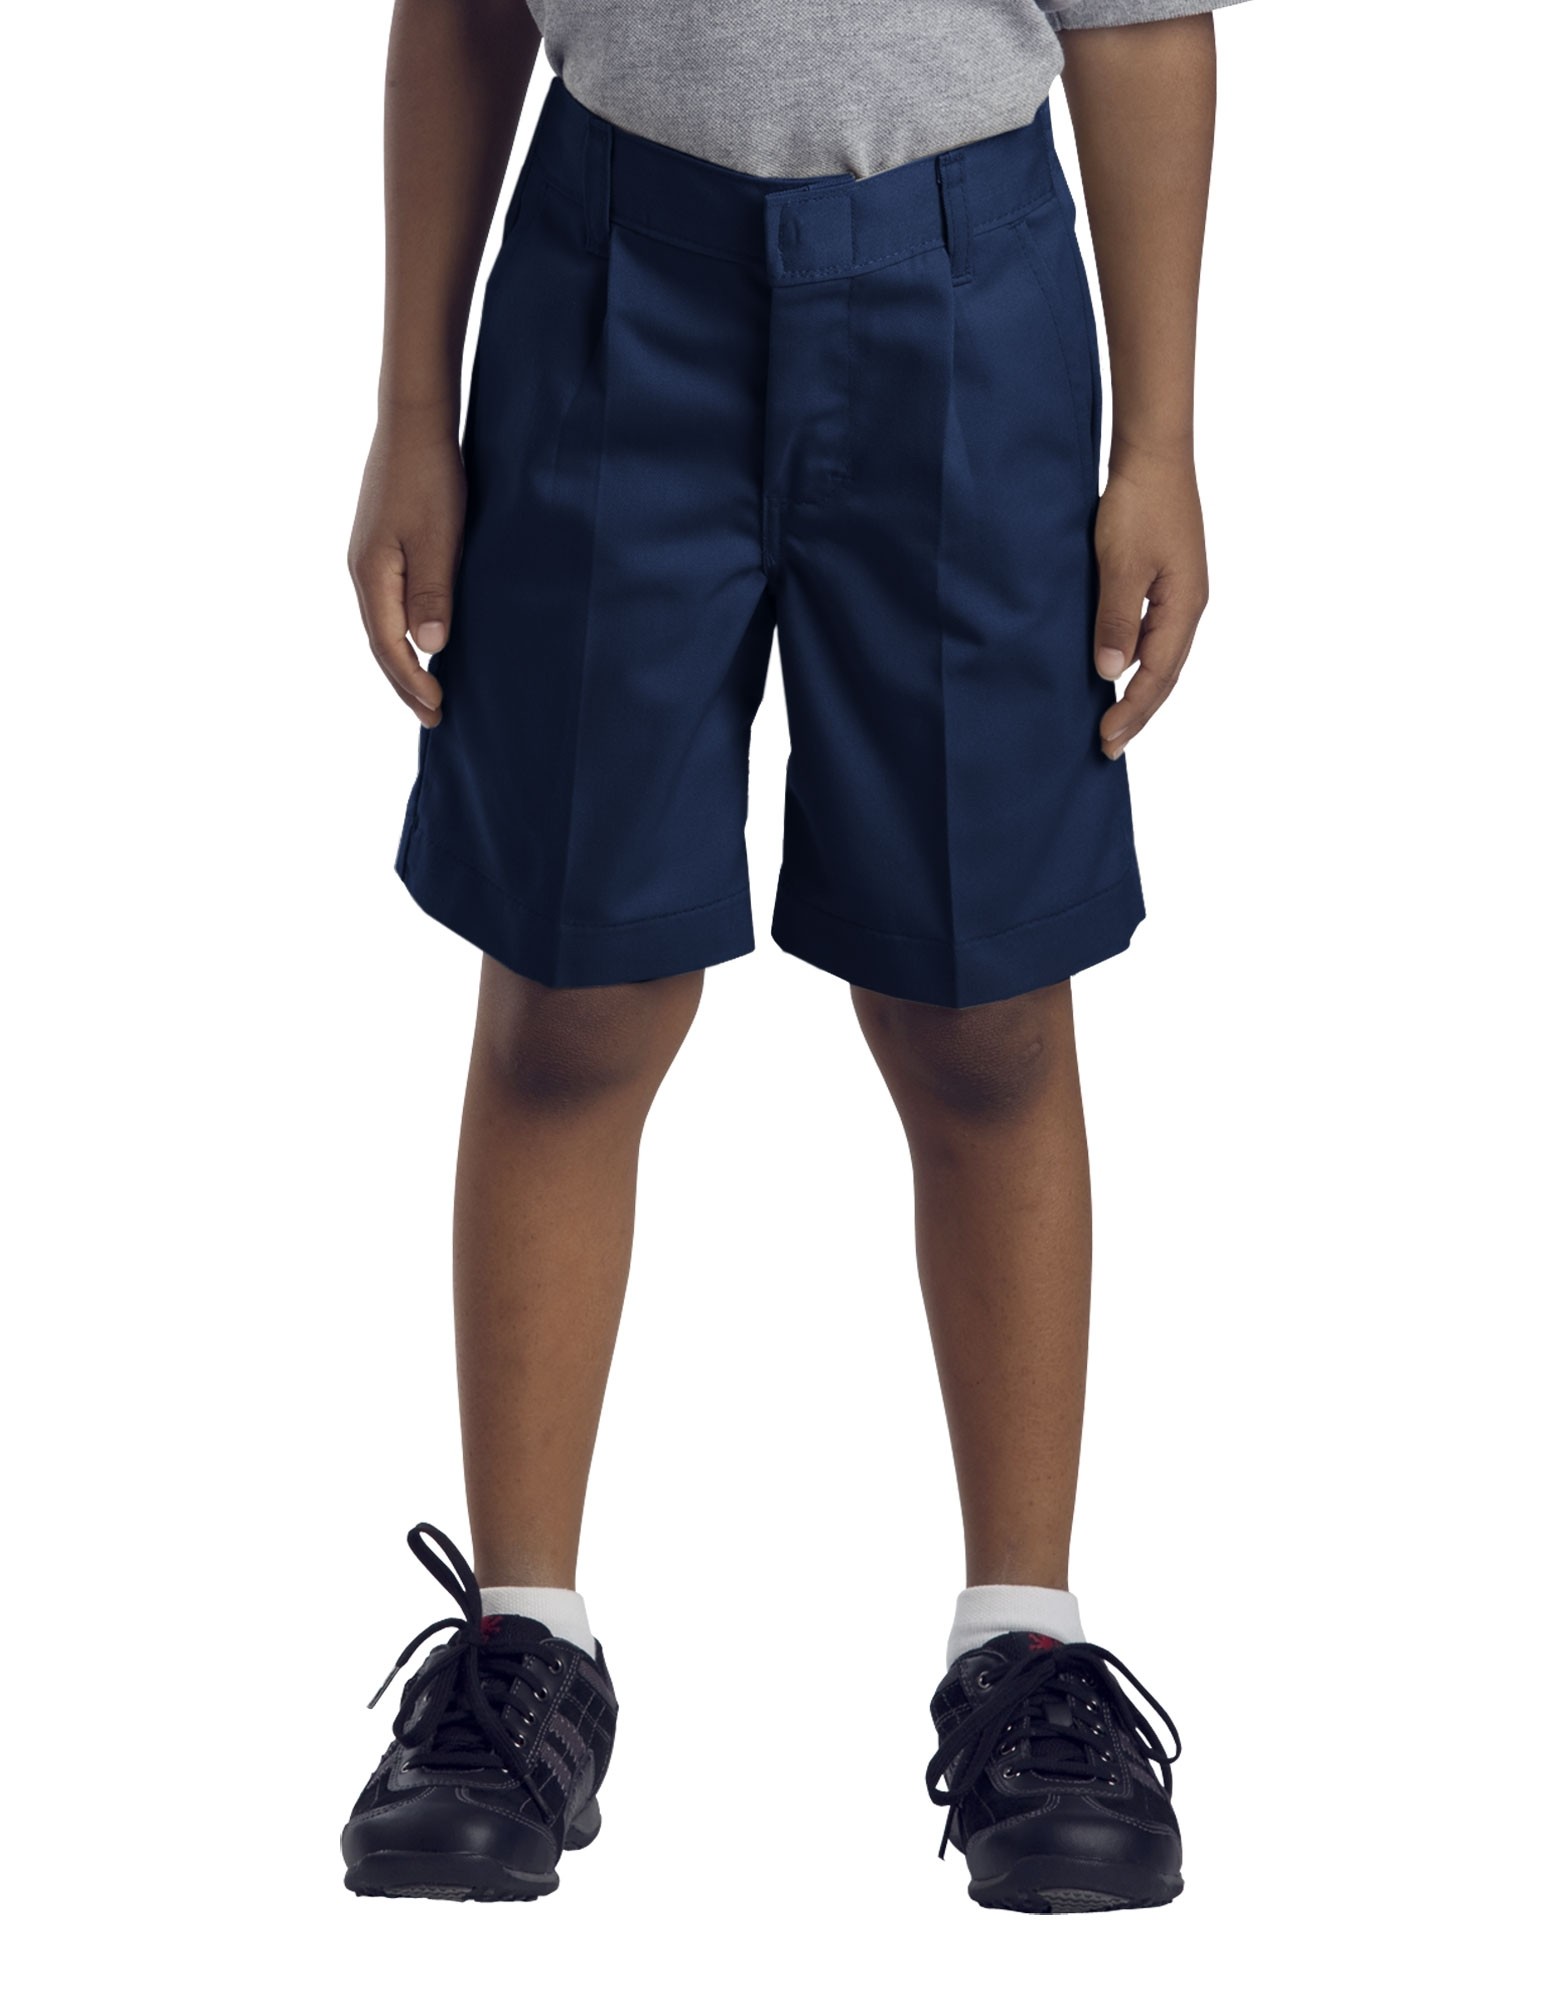 Boys Pleated Shorts-Navy